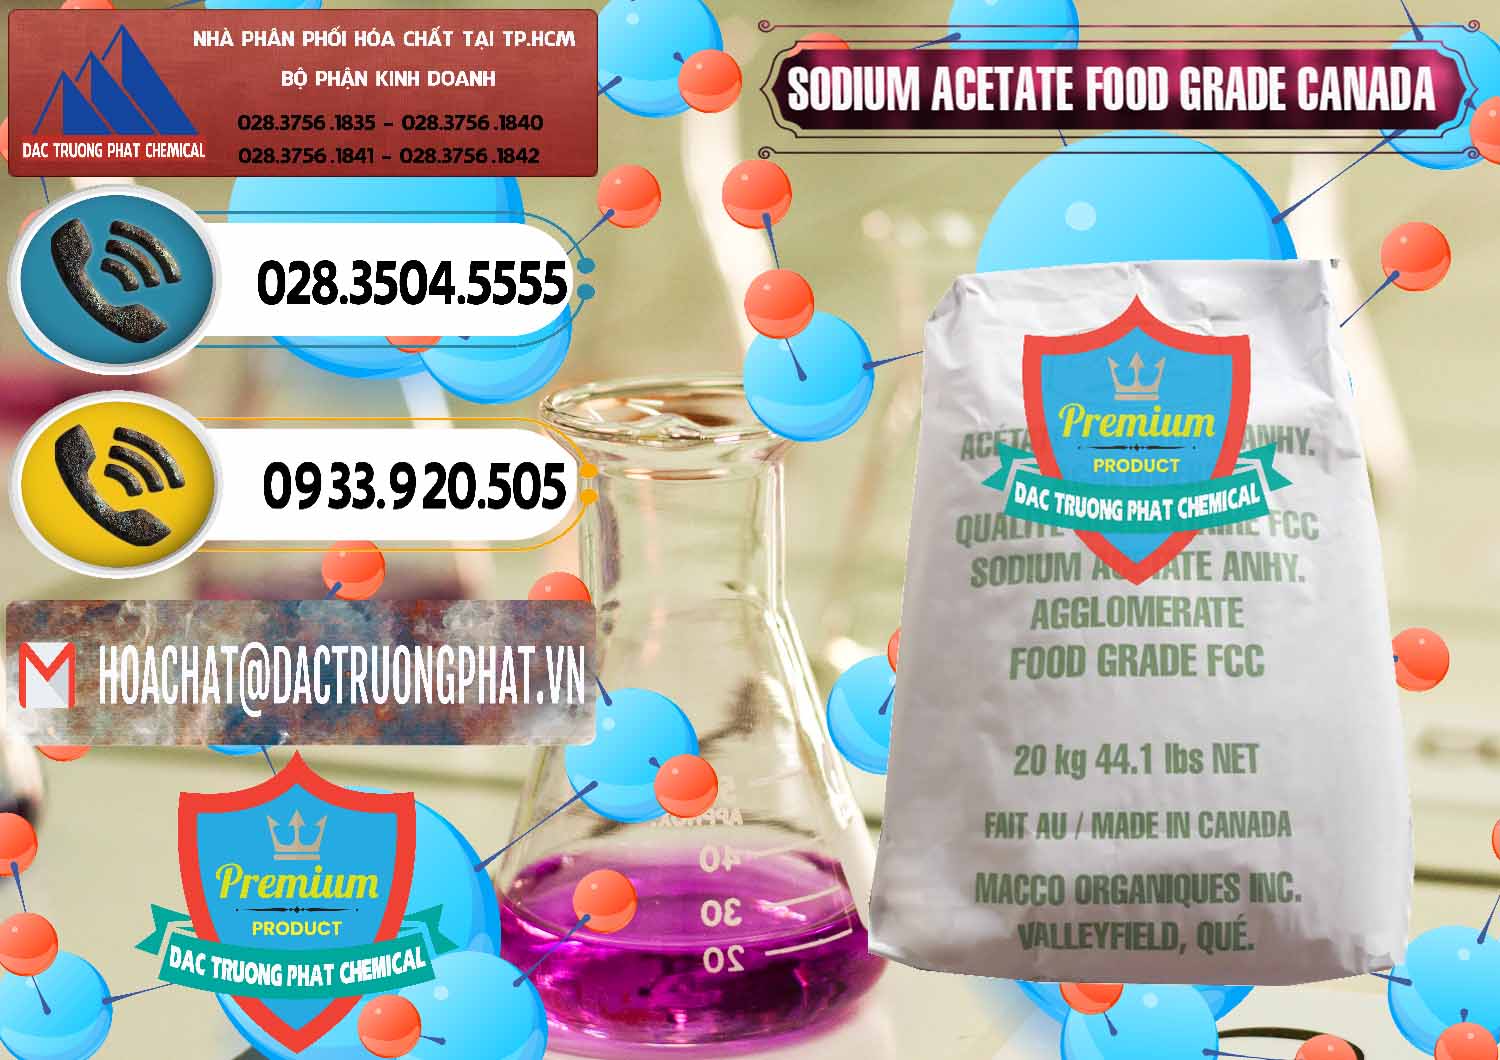 Công ty phân phối ( bán ) Sodium Acetate - Natri Acetate Food Grade Canada - 0282 - Đơn vị phân phối ( cung cấp ) hóa chất tại TP.HCM - hoachatdetnhuom.vn